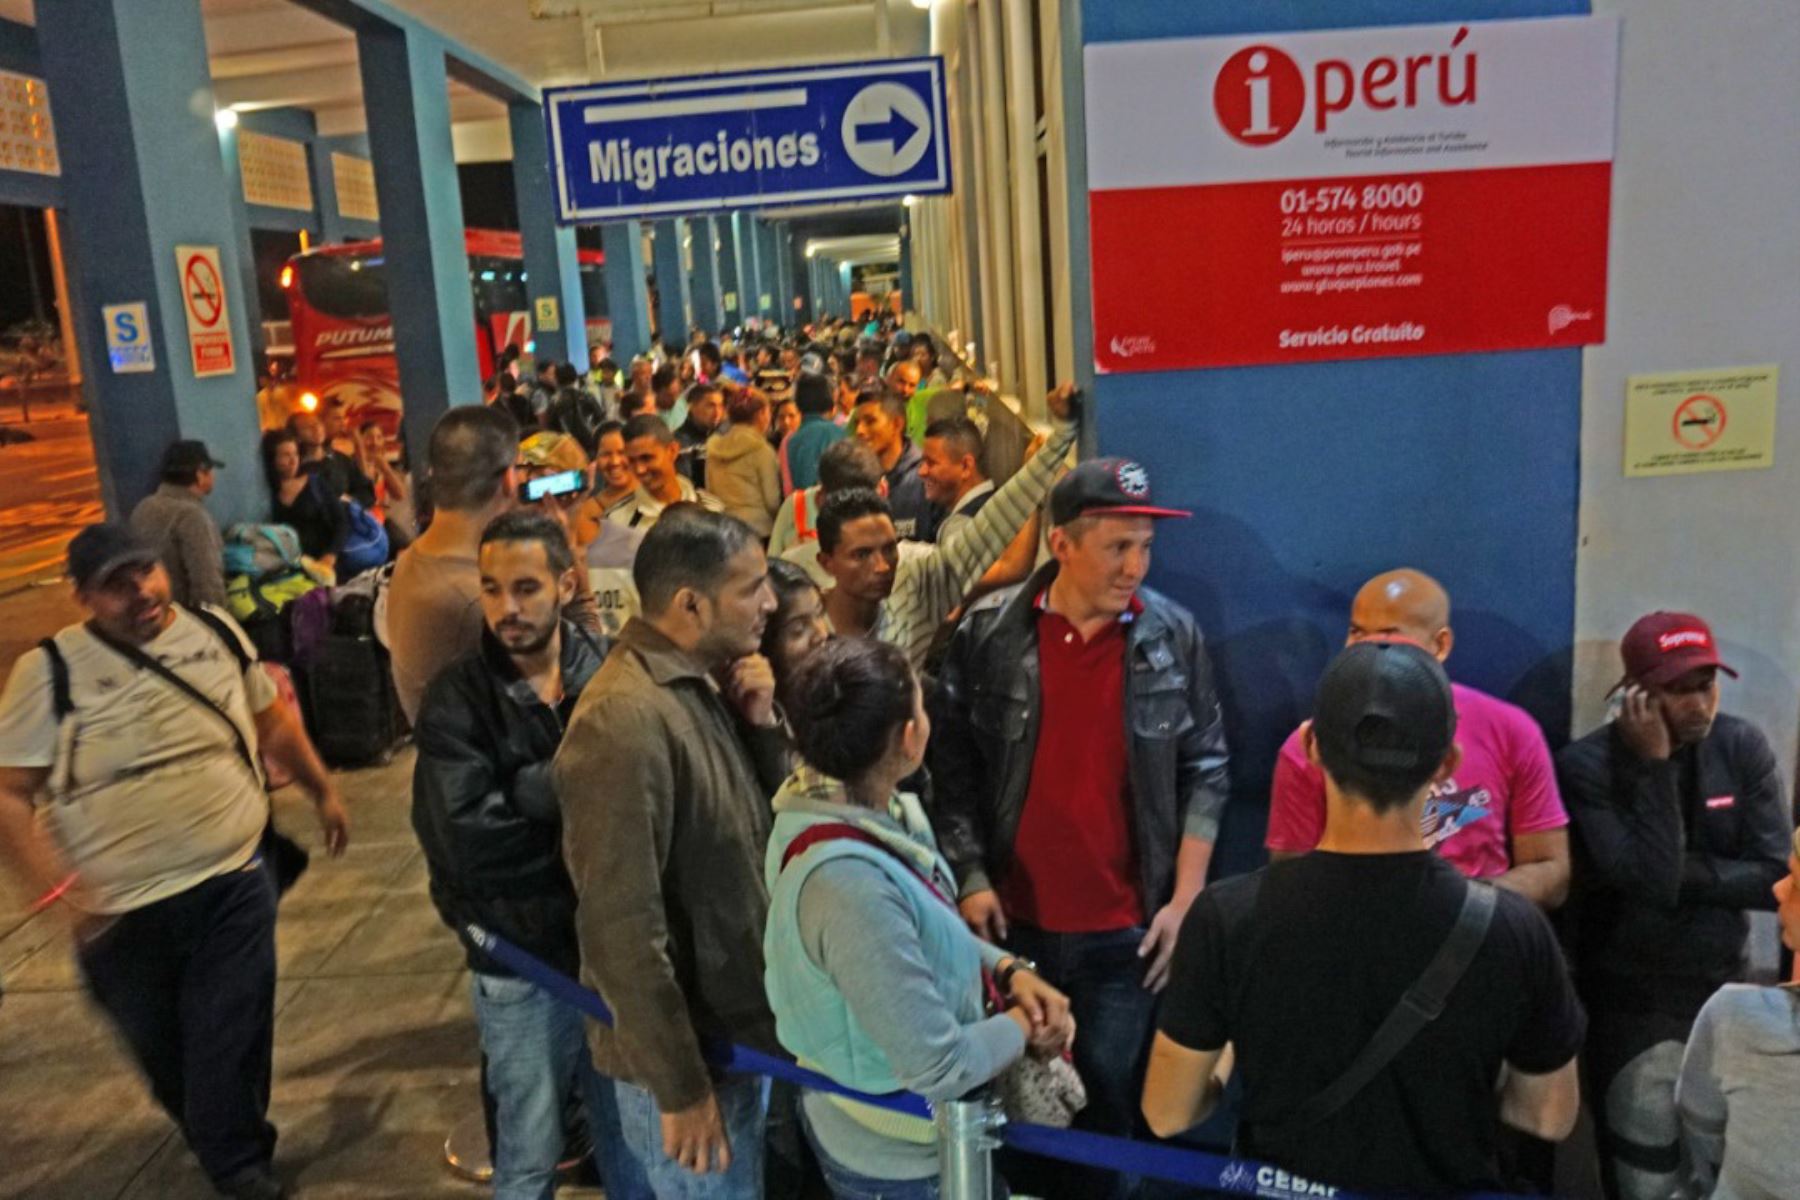 Más de 6,000 venezolanos han ingresado al Perú en últimas 48 horas a través de la frontera de Tumbes. Foto: Jahel Yovera.